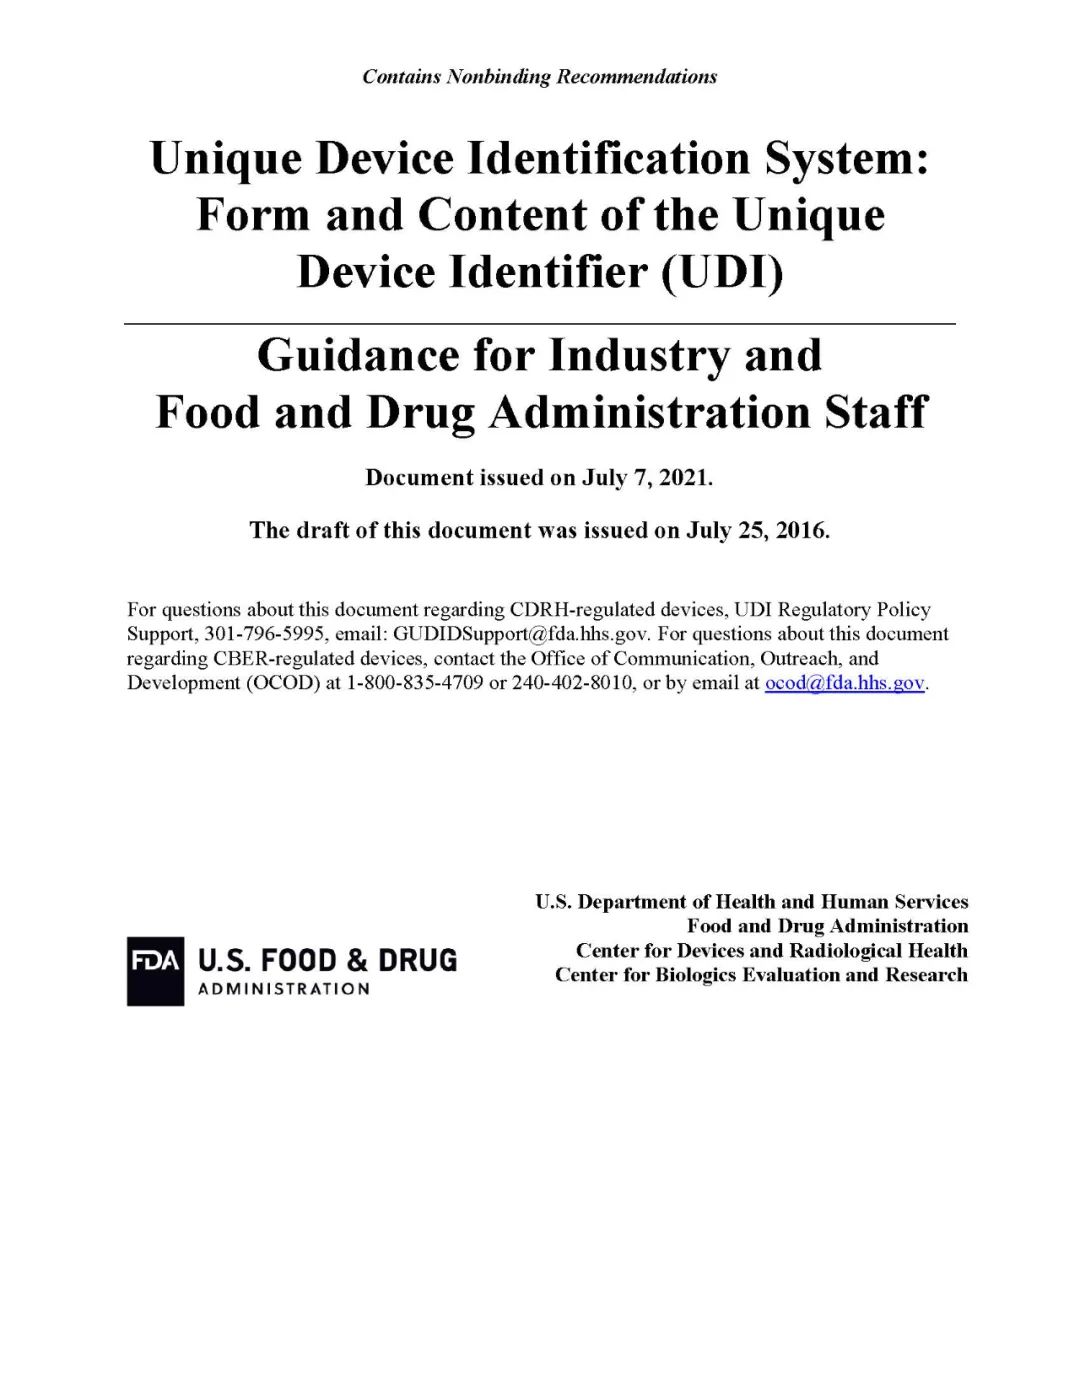 美国FDA UDI格式和内容指南1